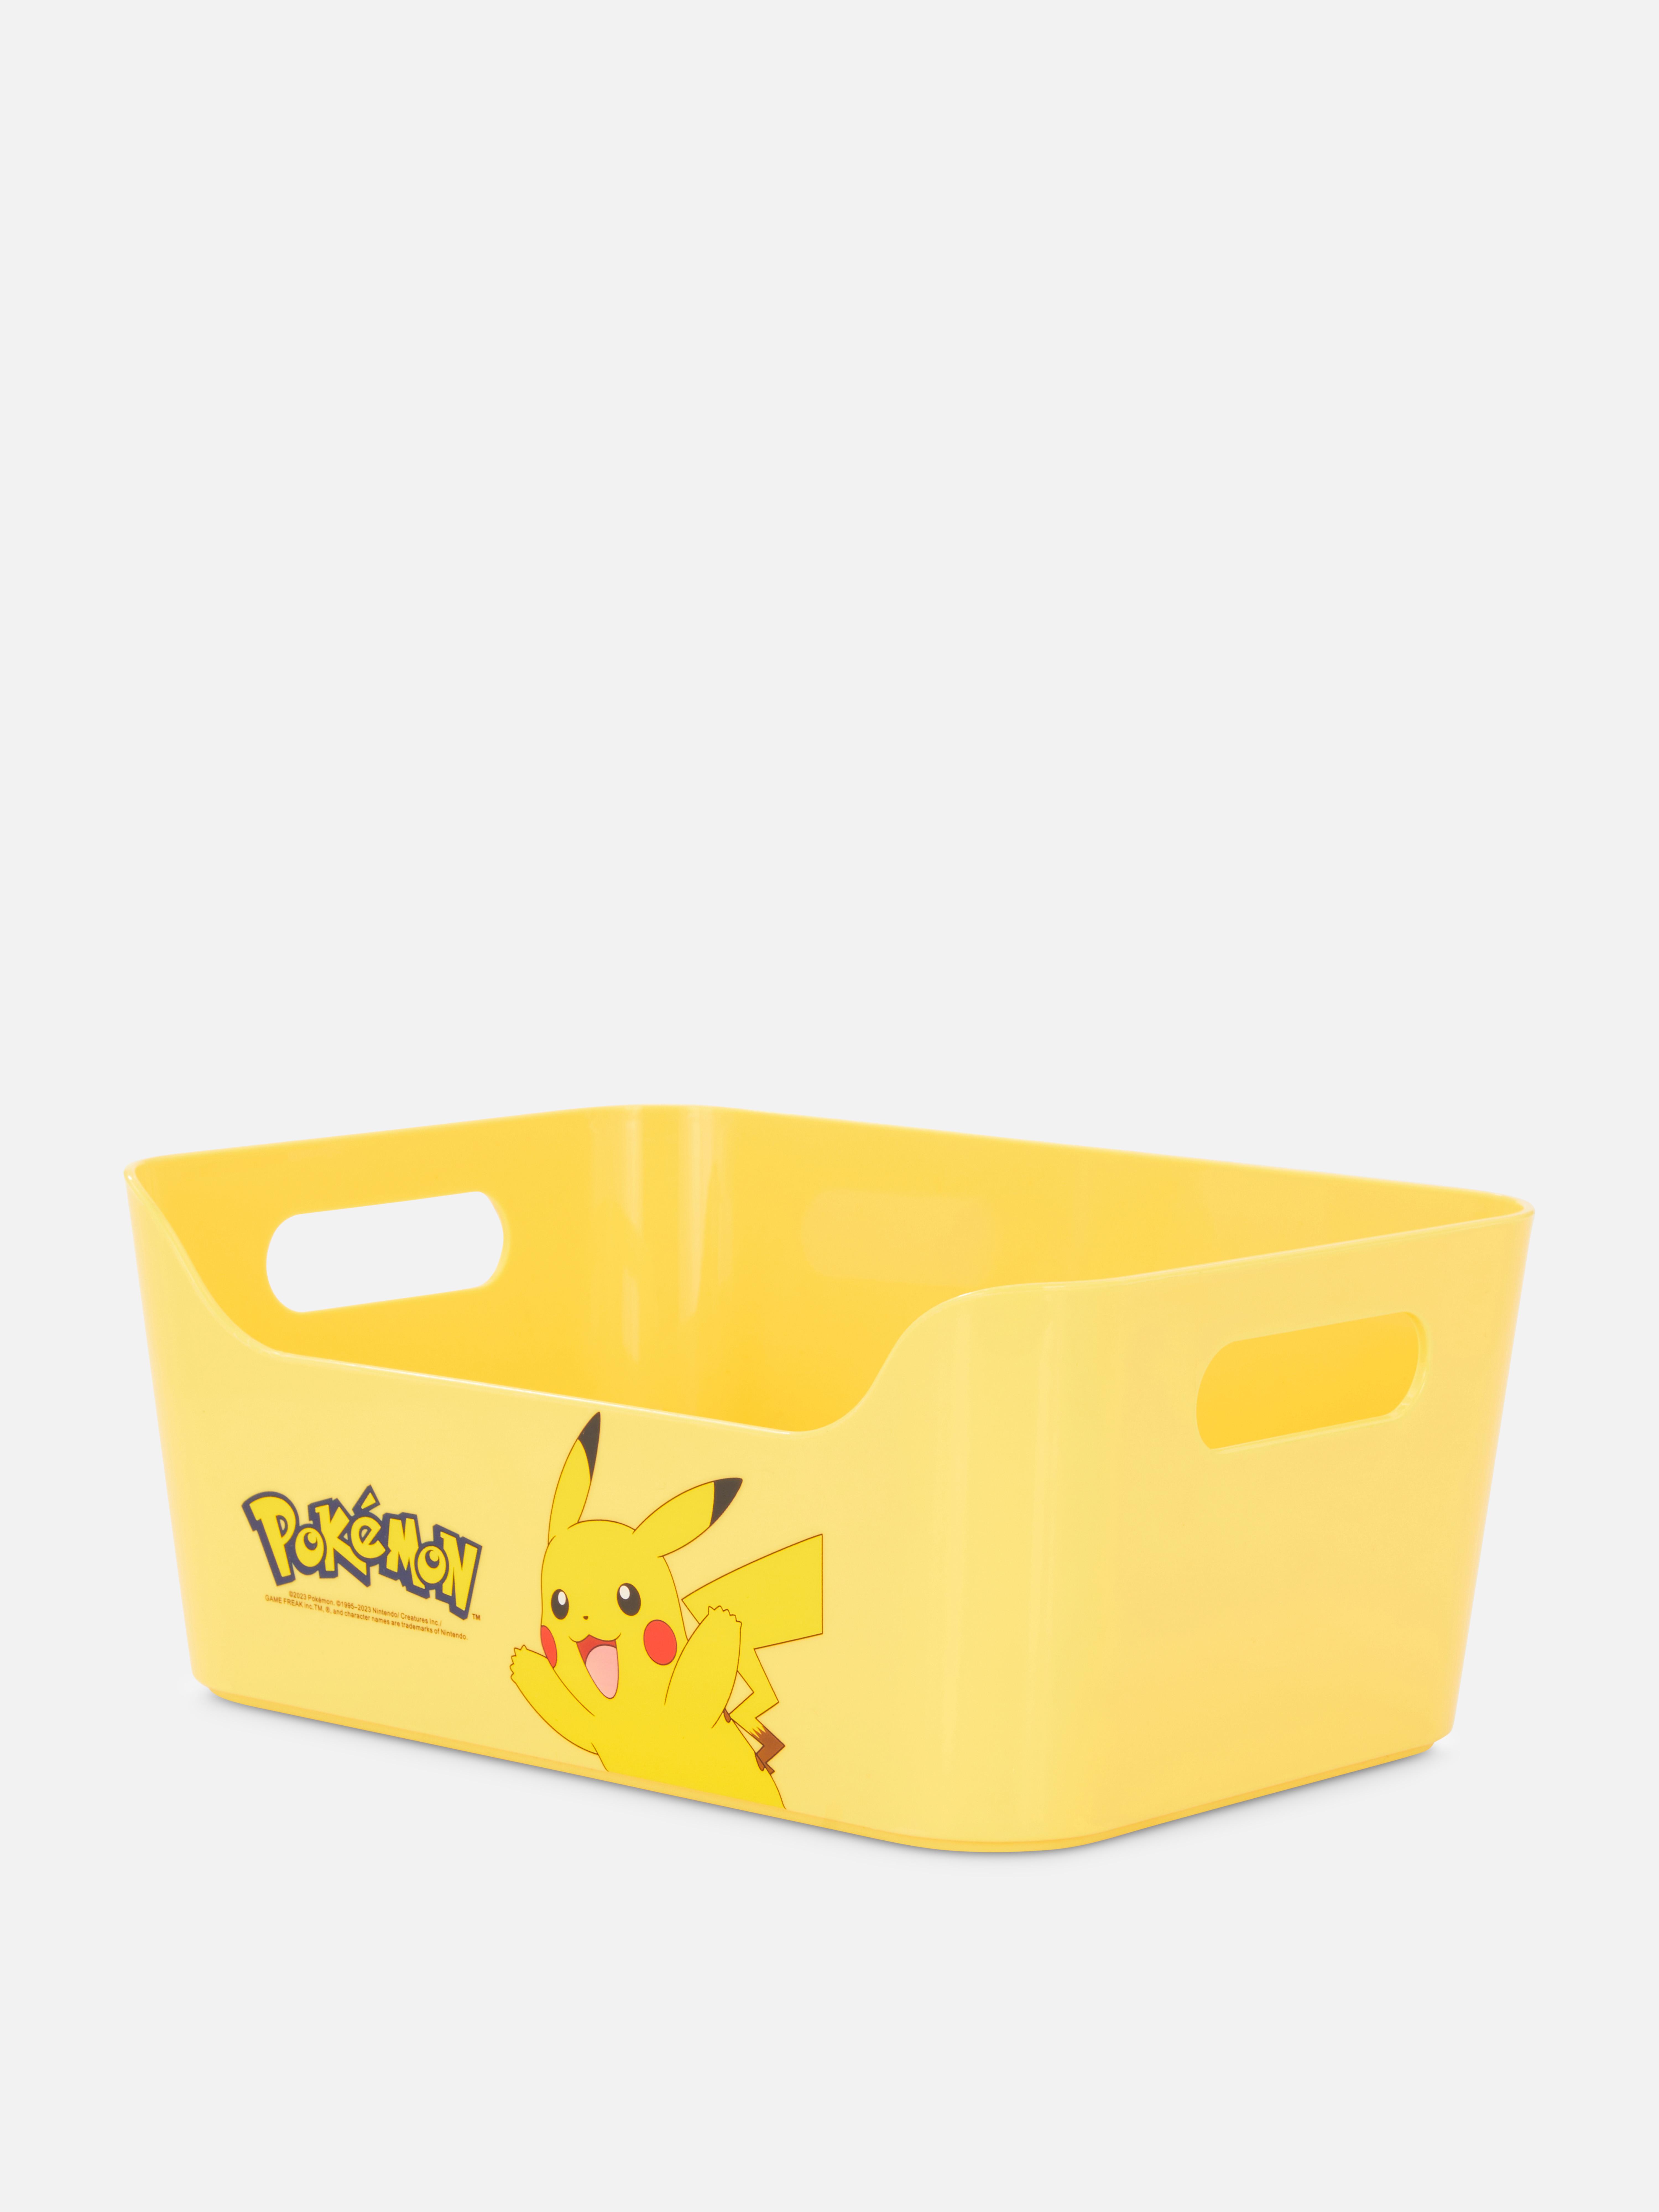 Pokémon Pikachu Storage Bin